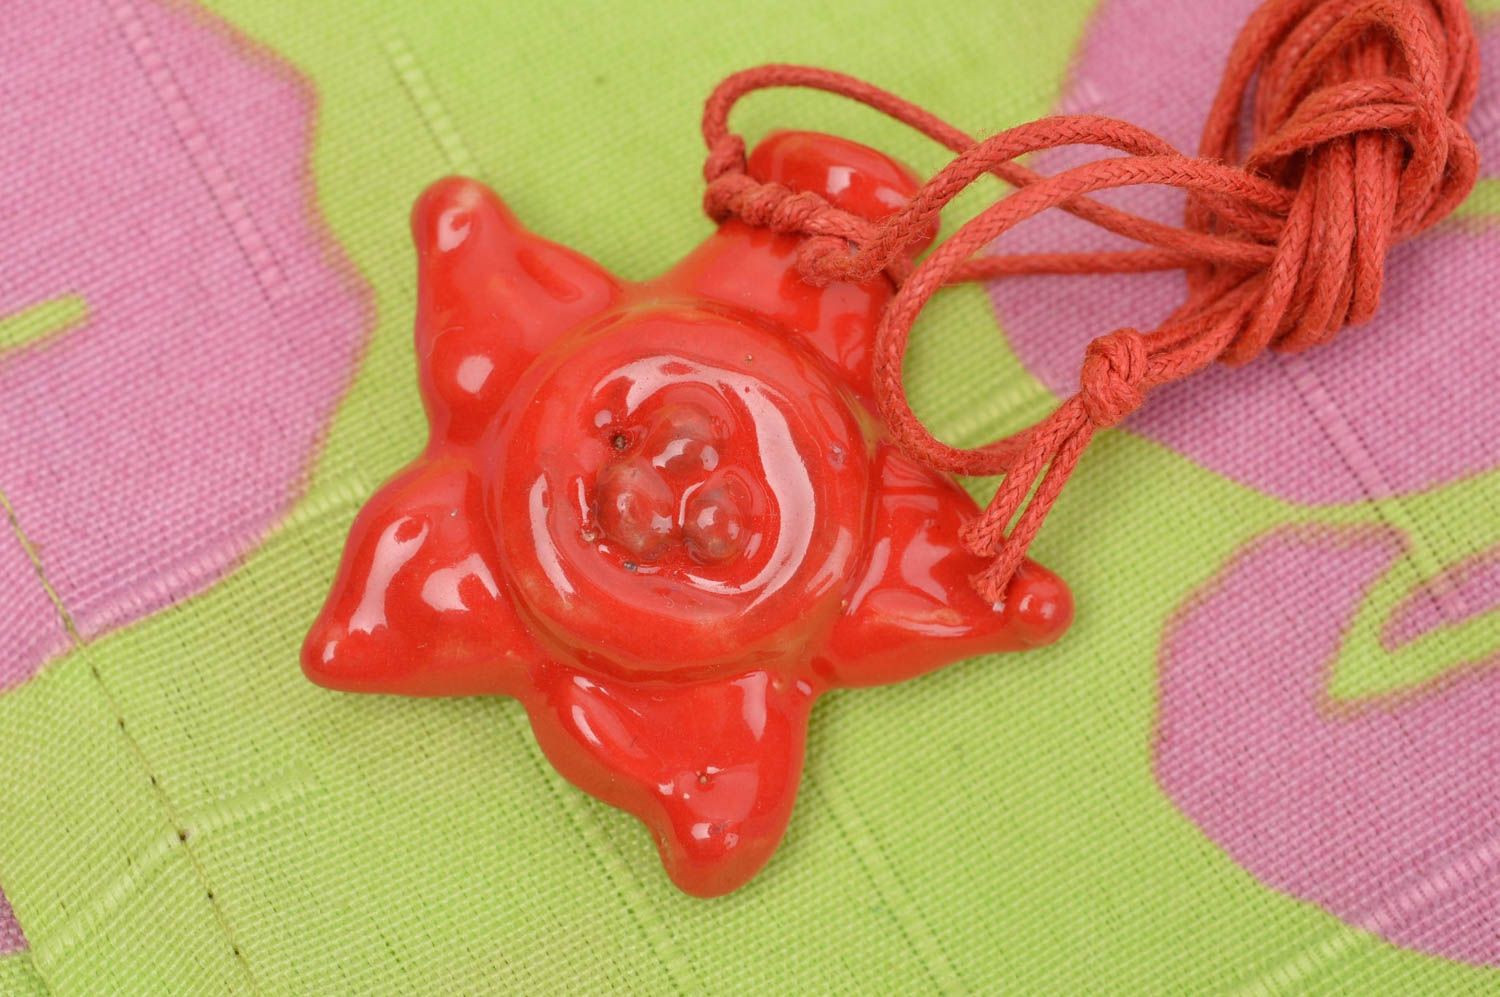 Кулон ручной работы глиняный аромакулон украшение на шею Красная звезда фото 1